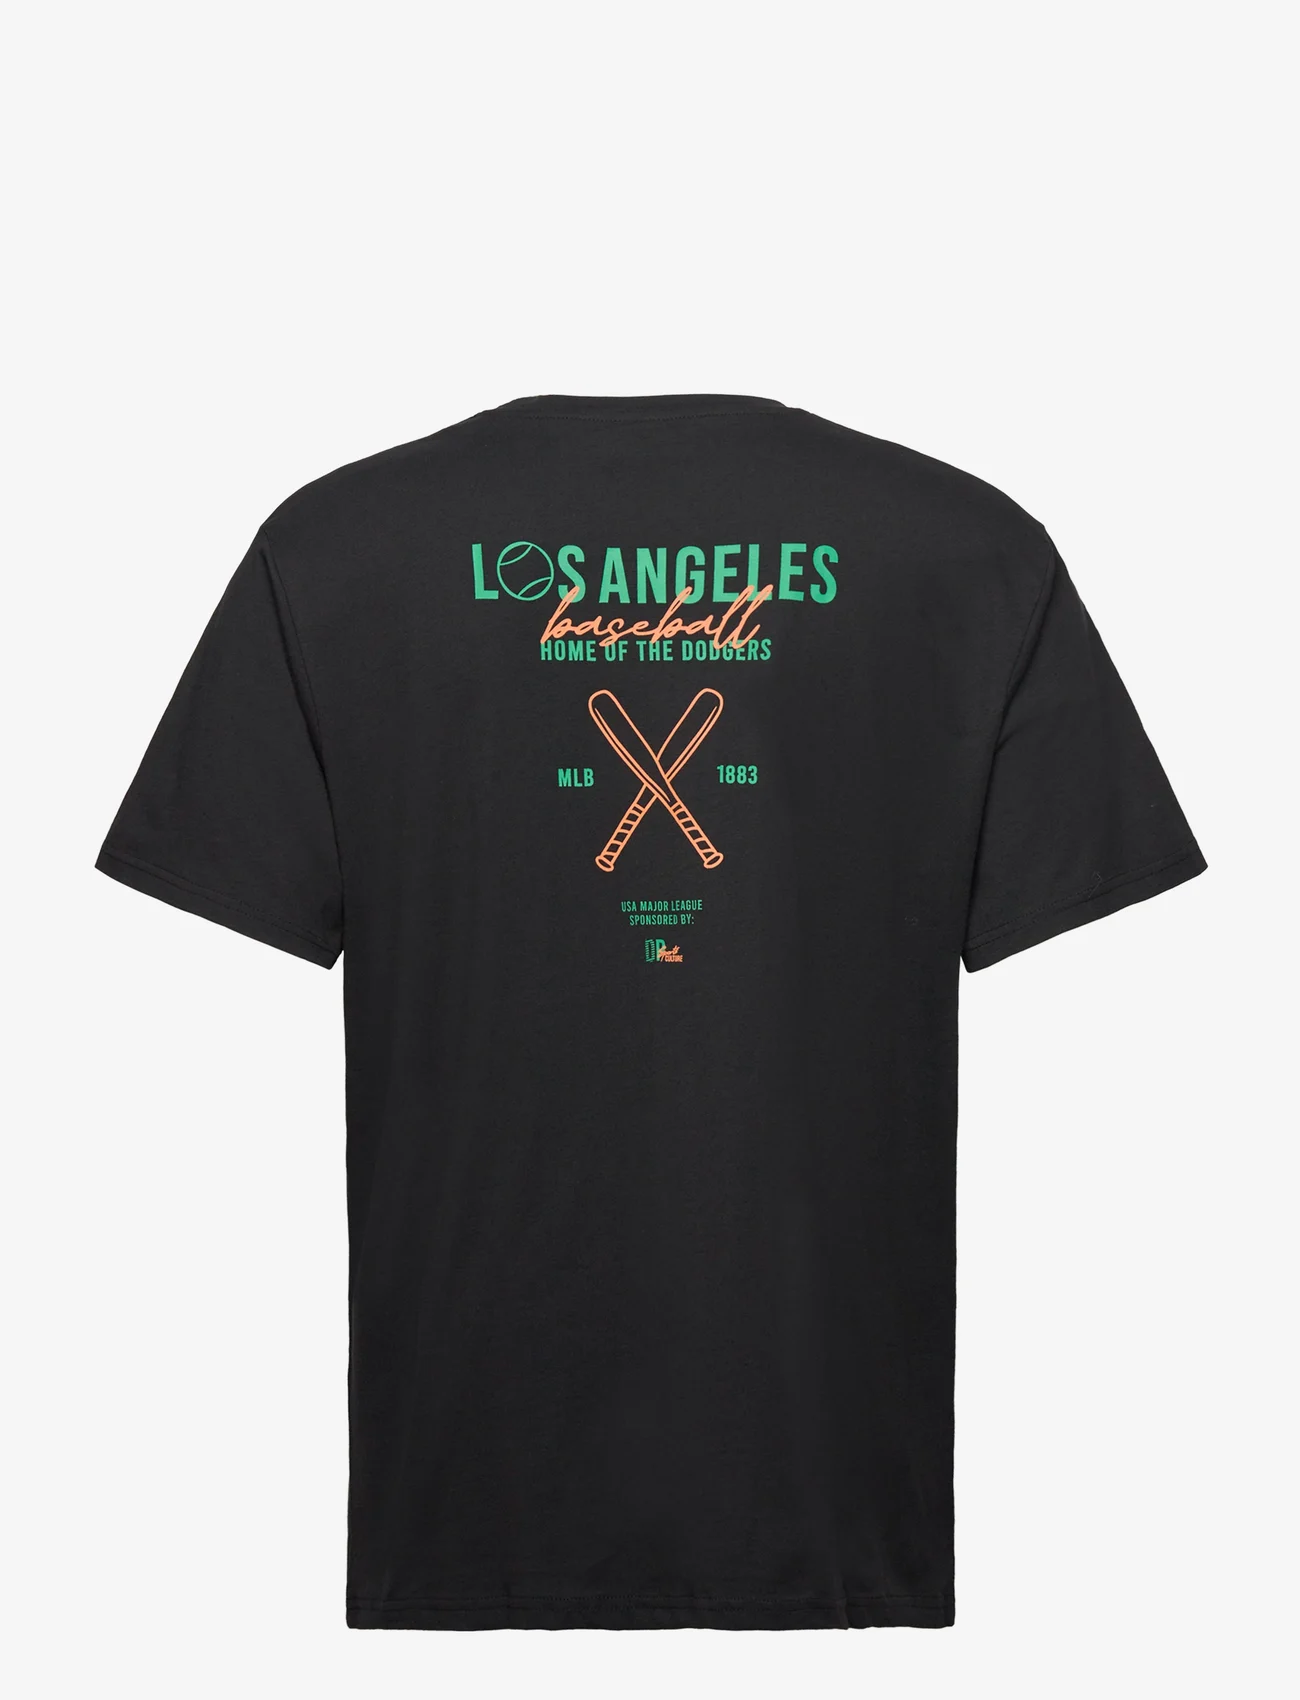 Denim project - DPLos Angeles T-shirt - mažiausios kainos - black - 1